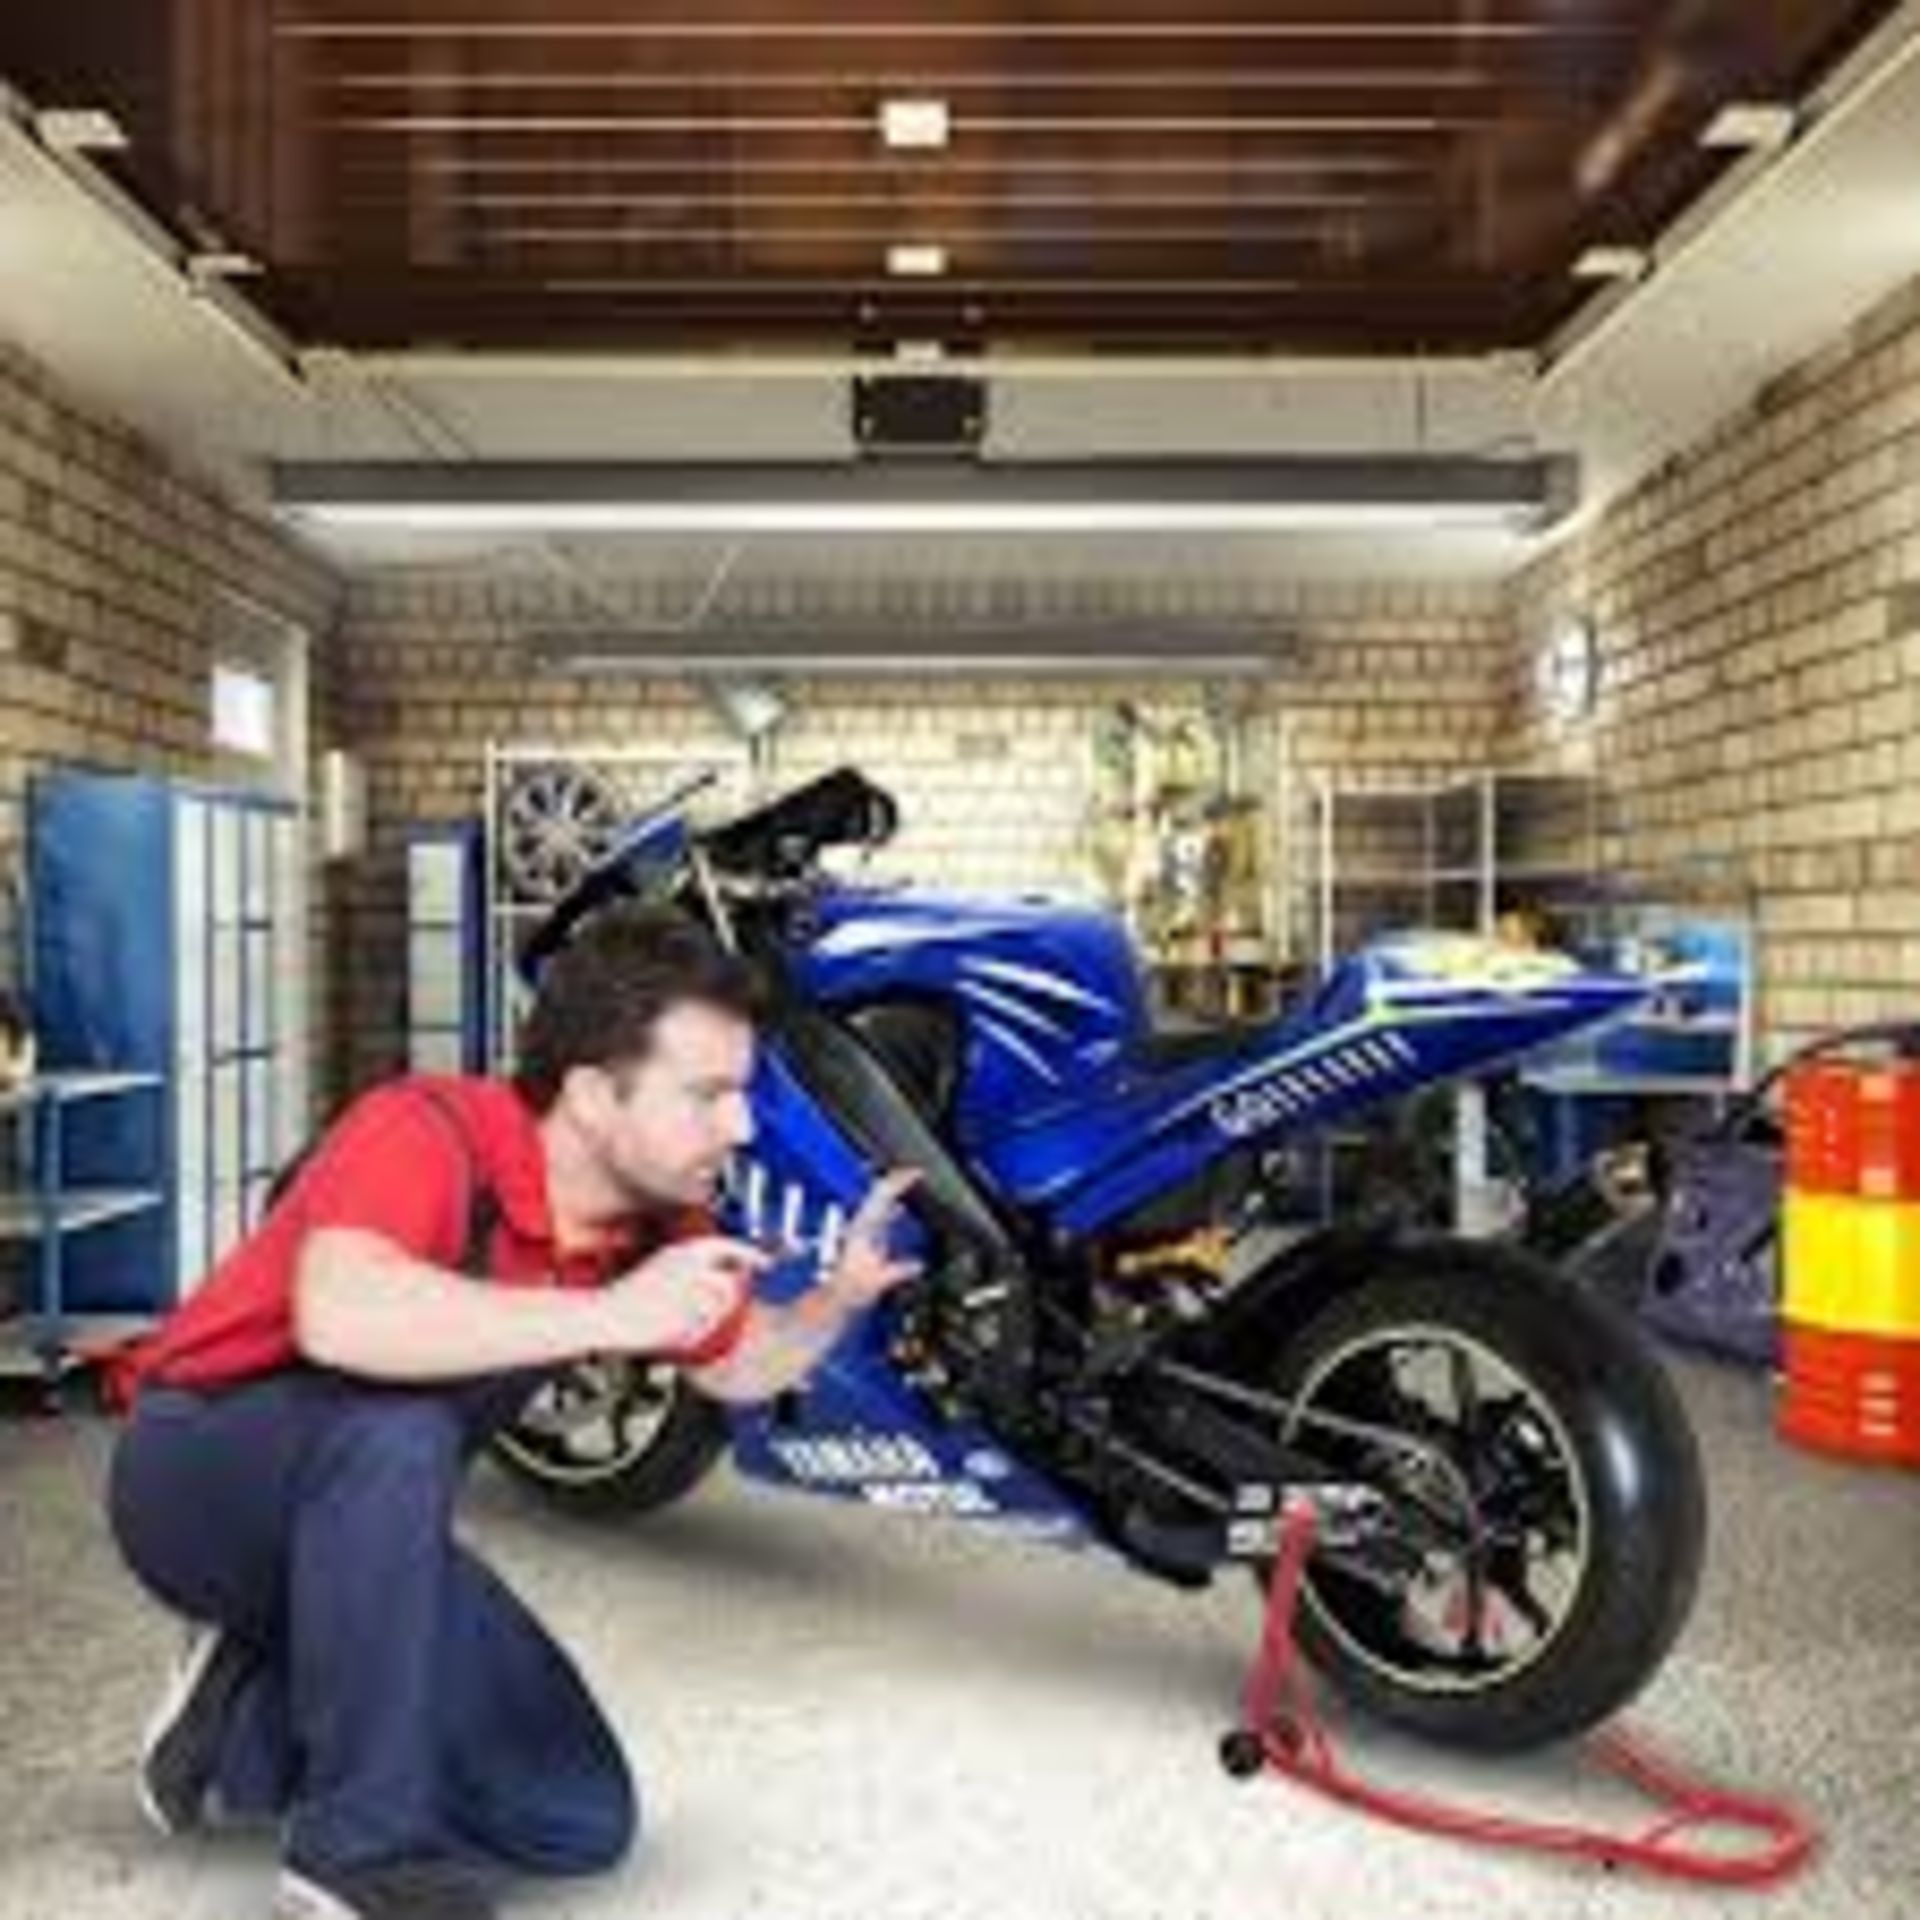 Motorcycle Repair Stand Rear Wheel Professional Motorcycle Stand Rear with Rubber Housing Red. -